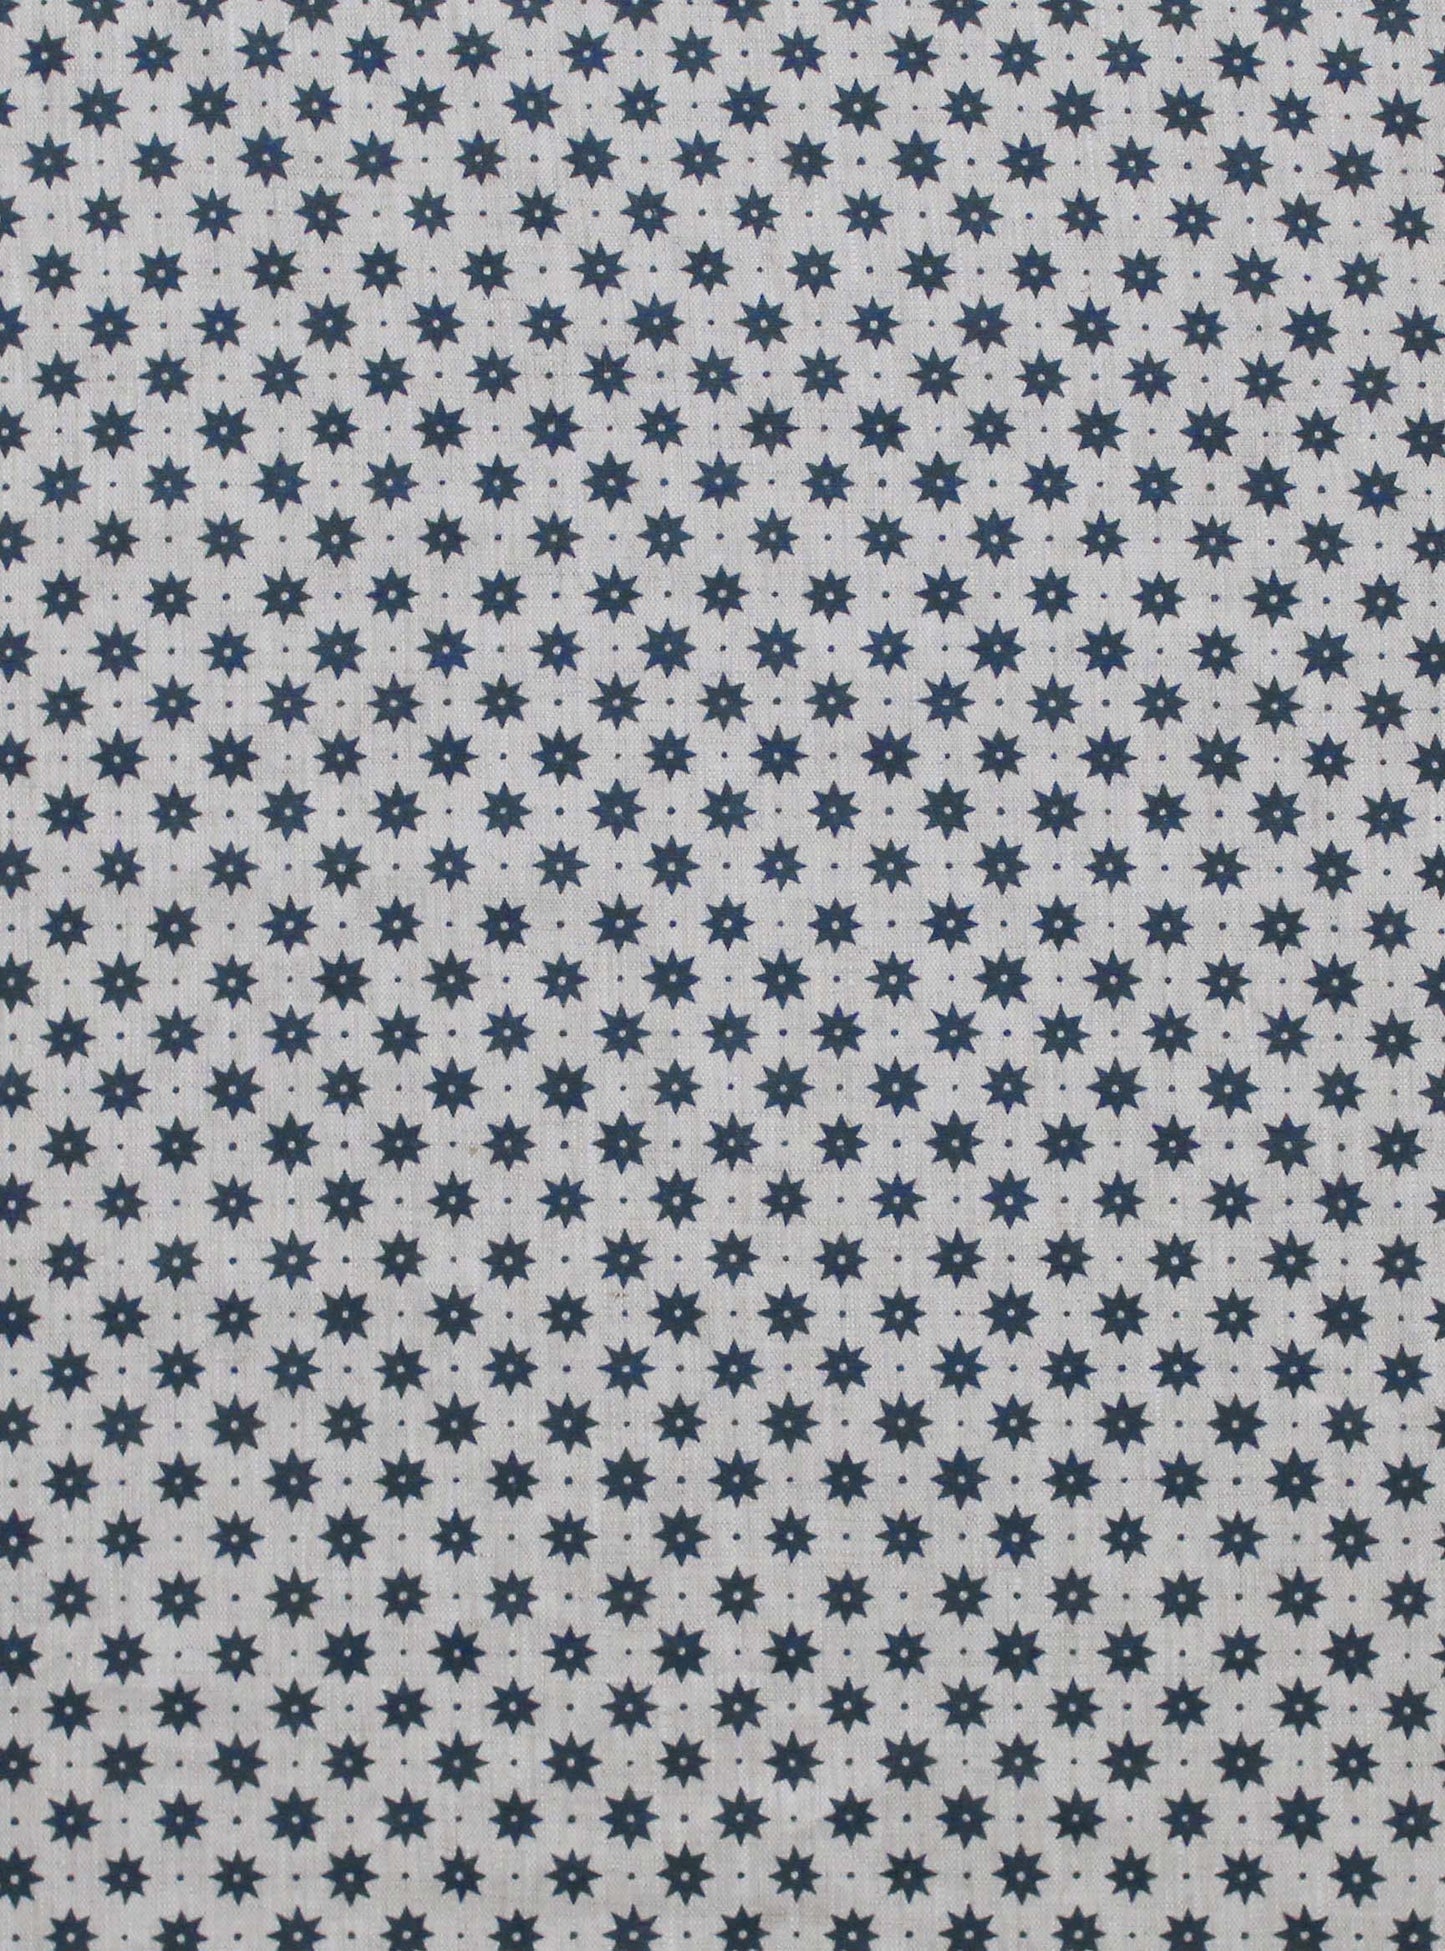 Petite Etoile Prussian Blue - Natural Linen